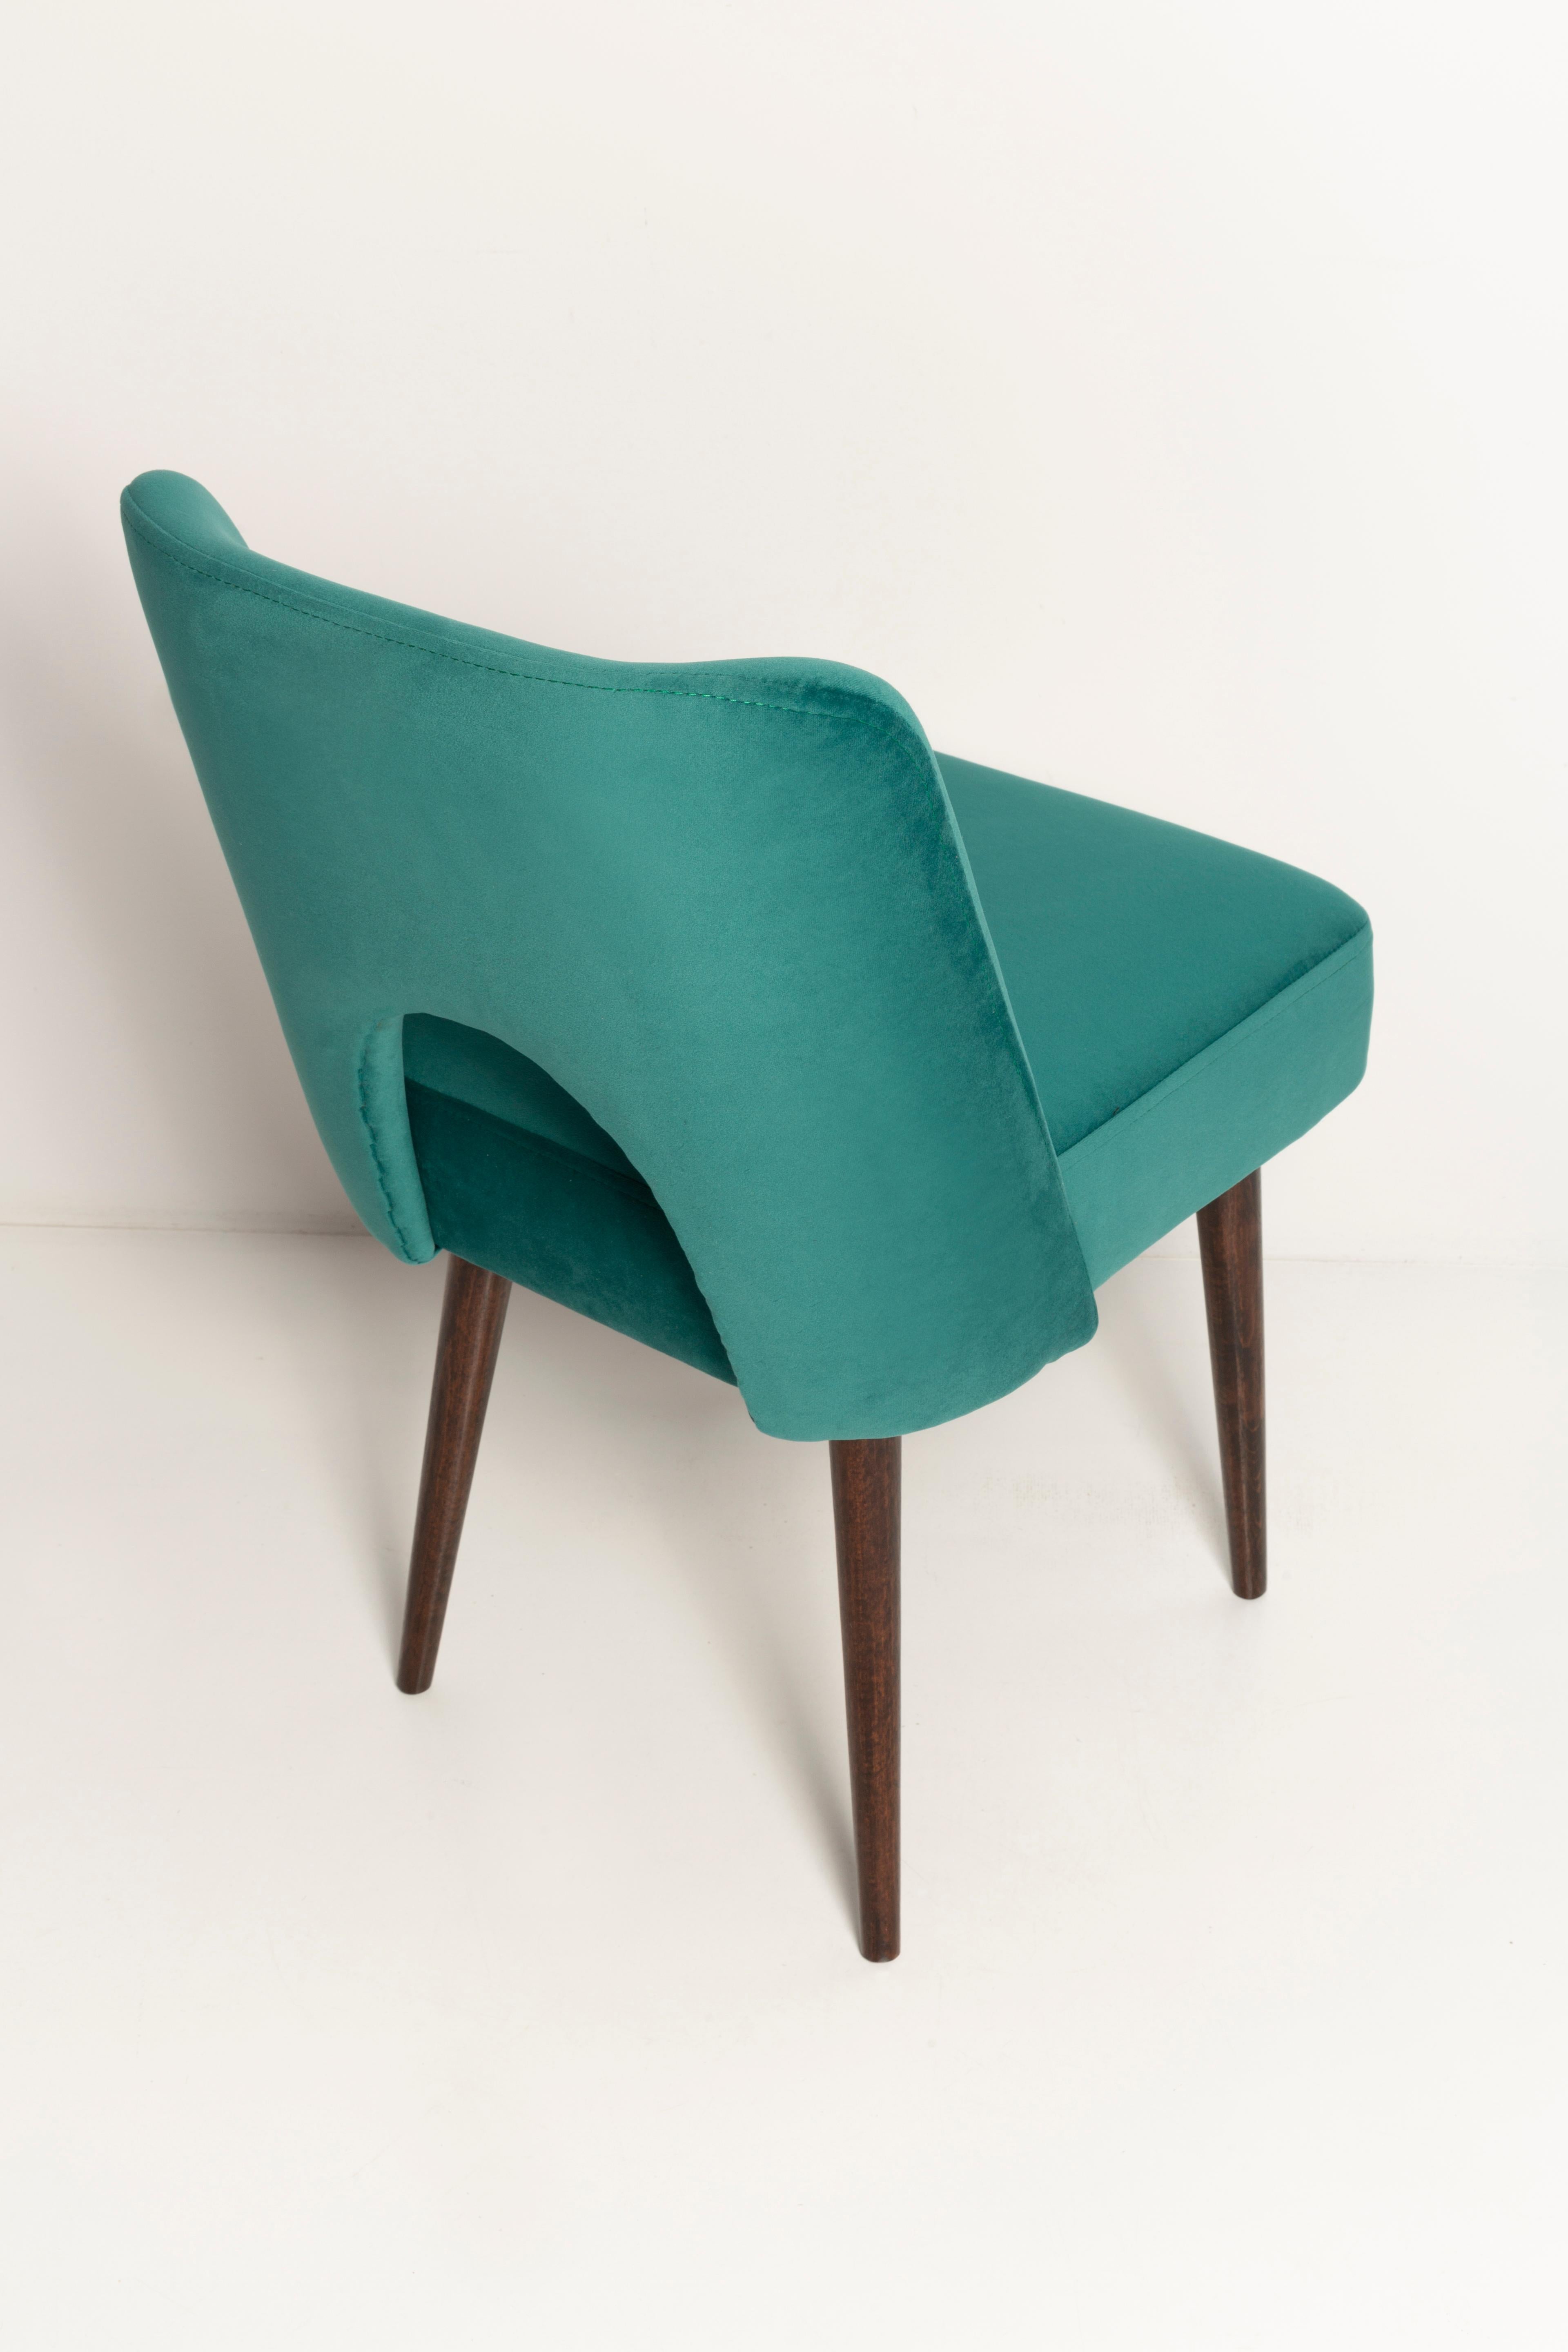 Dark Green Velvet 'Shell' Chair, Europe, 1960s For Sale 4